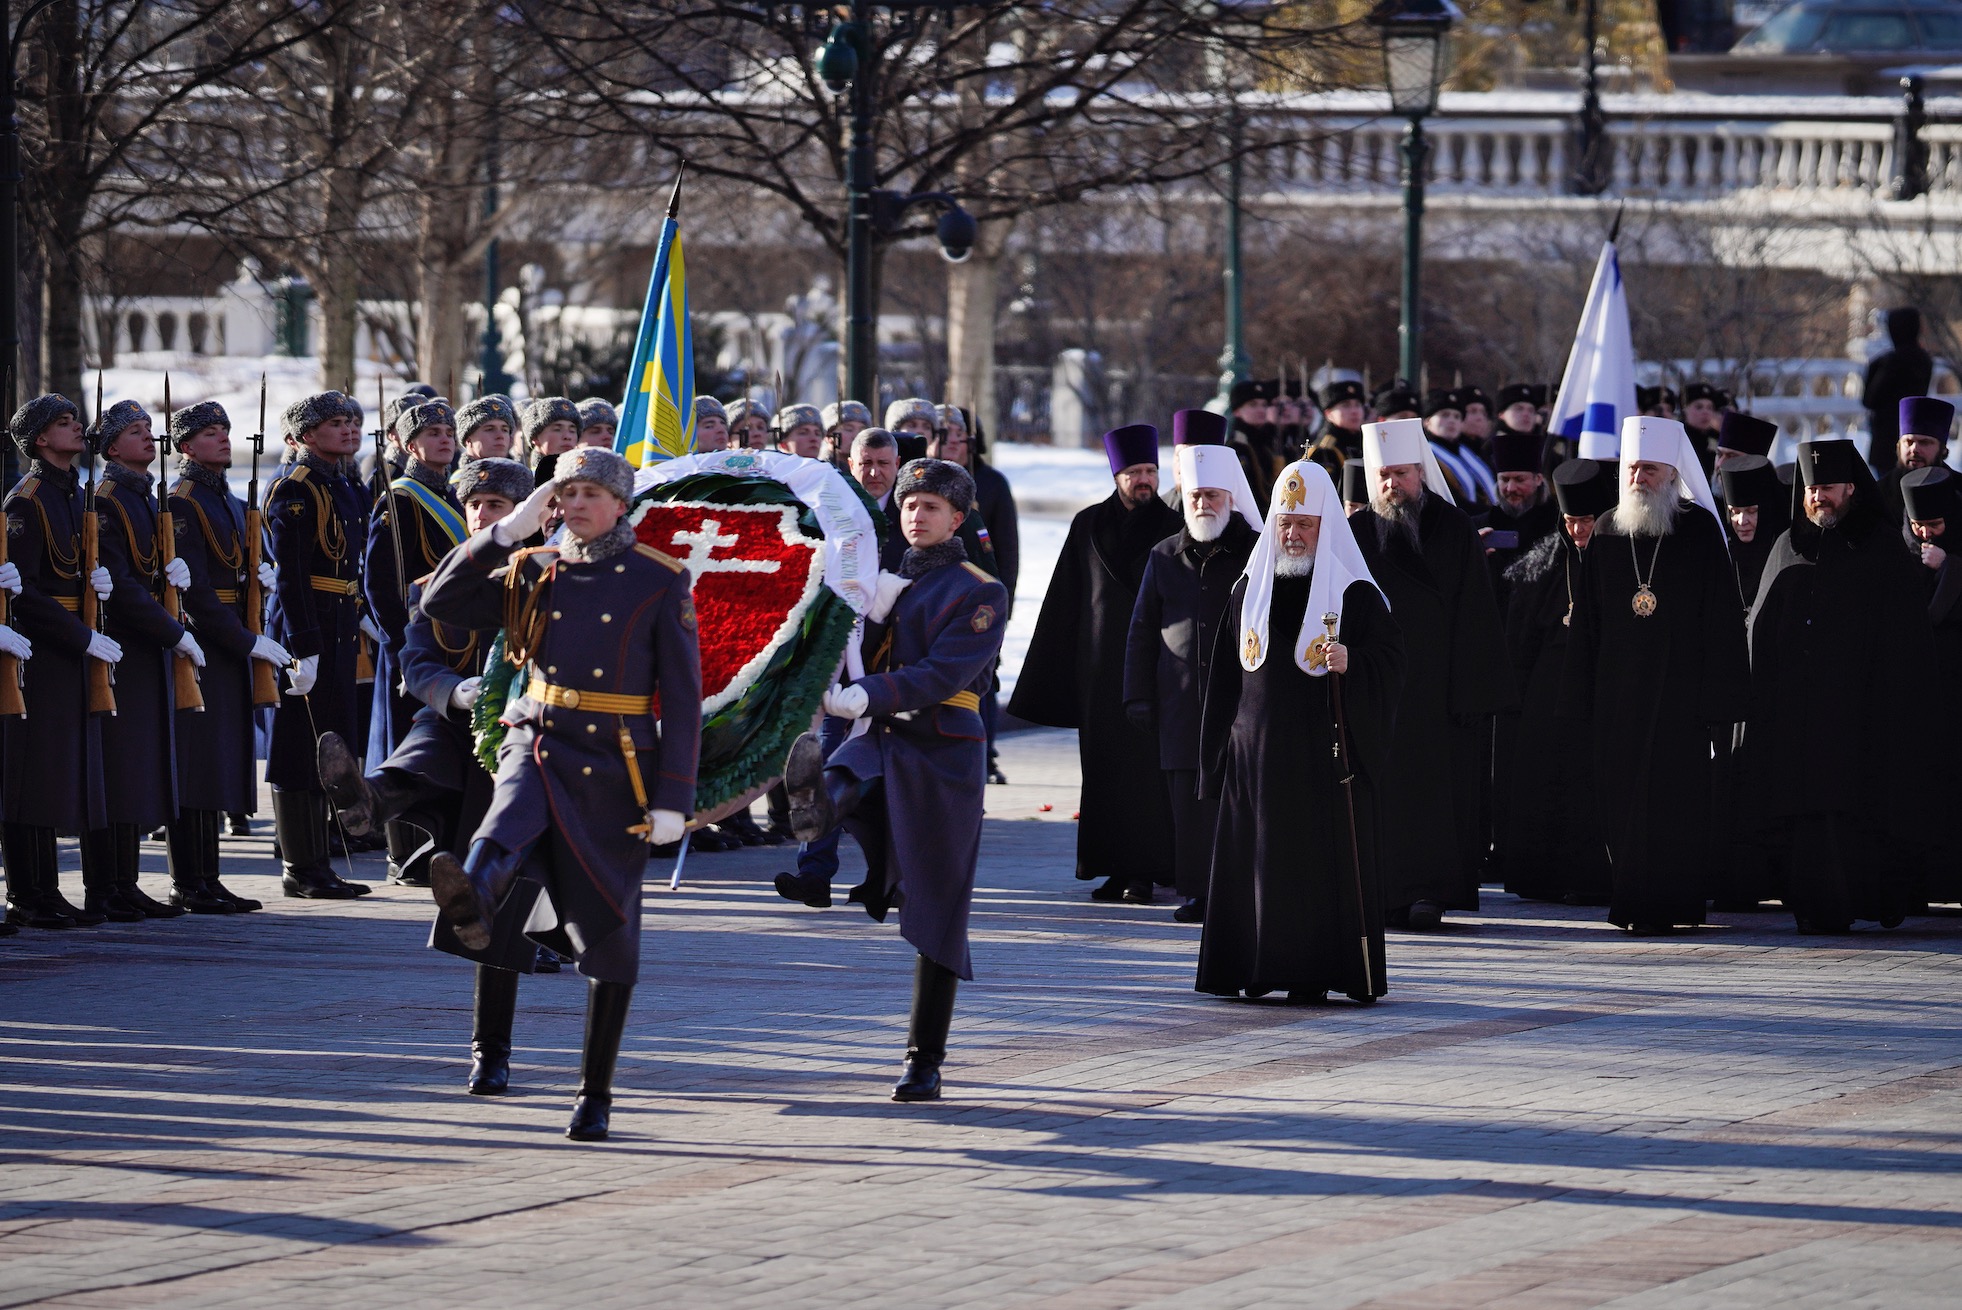 À l’occasion de la Journée du défenseur de la patrie, le patriarche Cyrille a déposé une gerbe sur la tombe du soldat inconnu